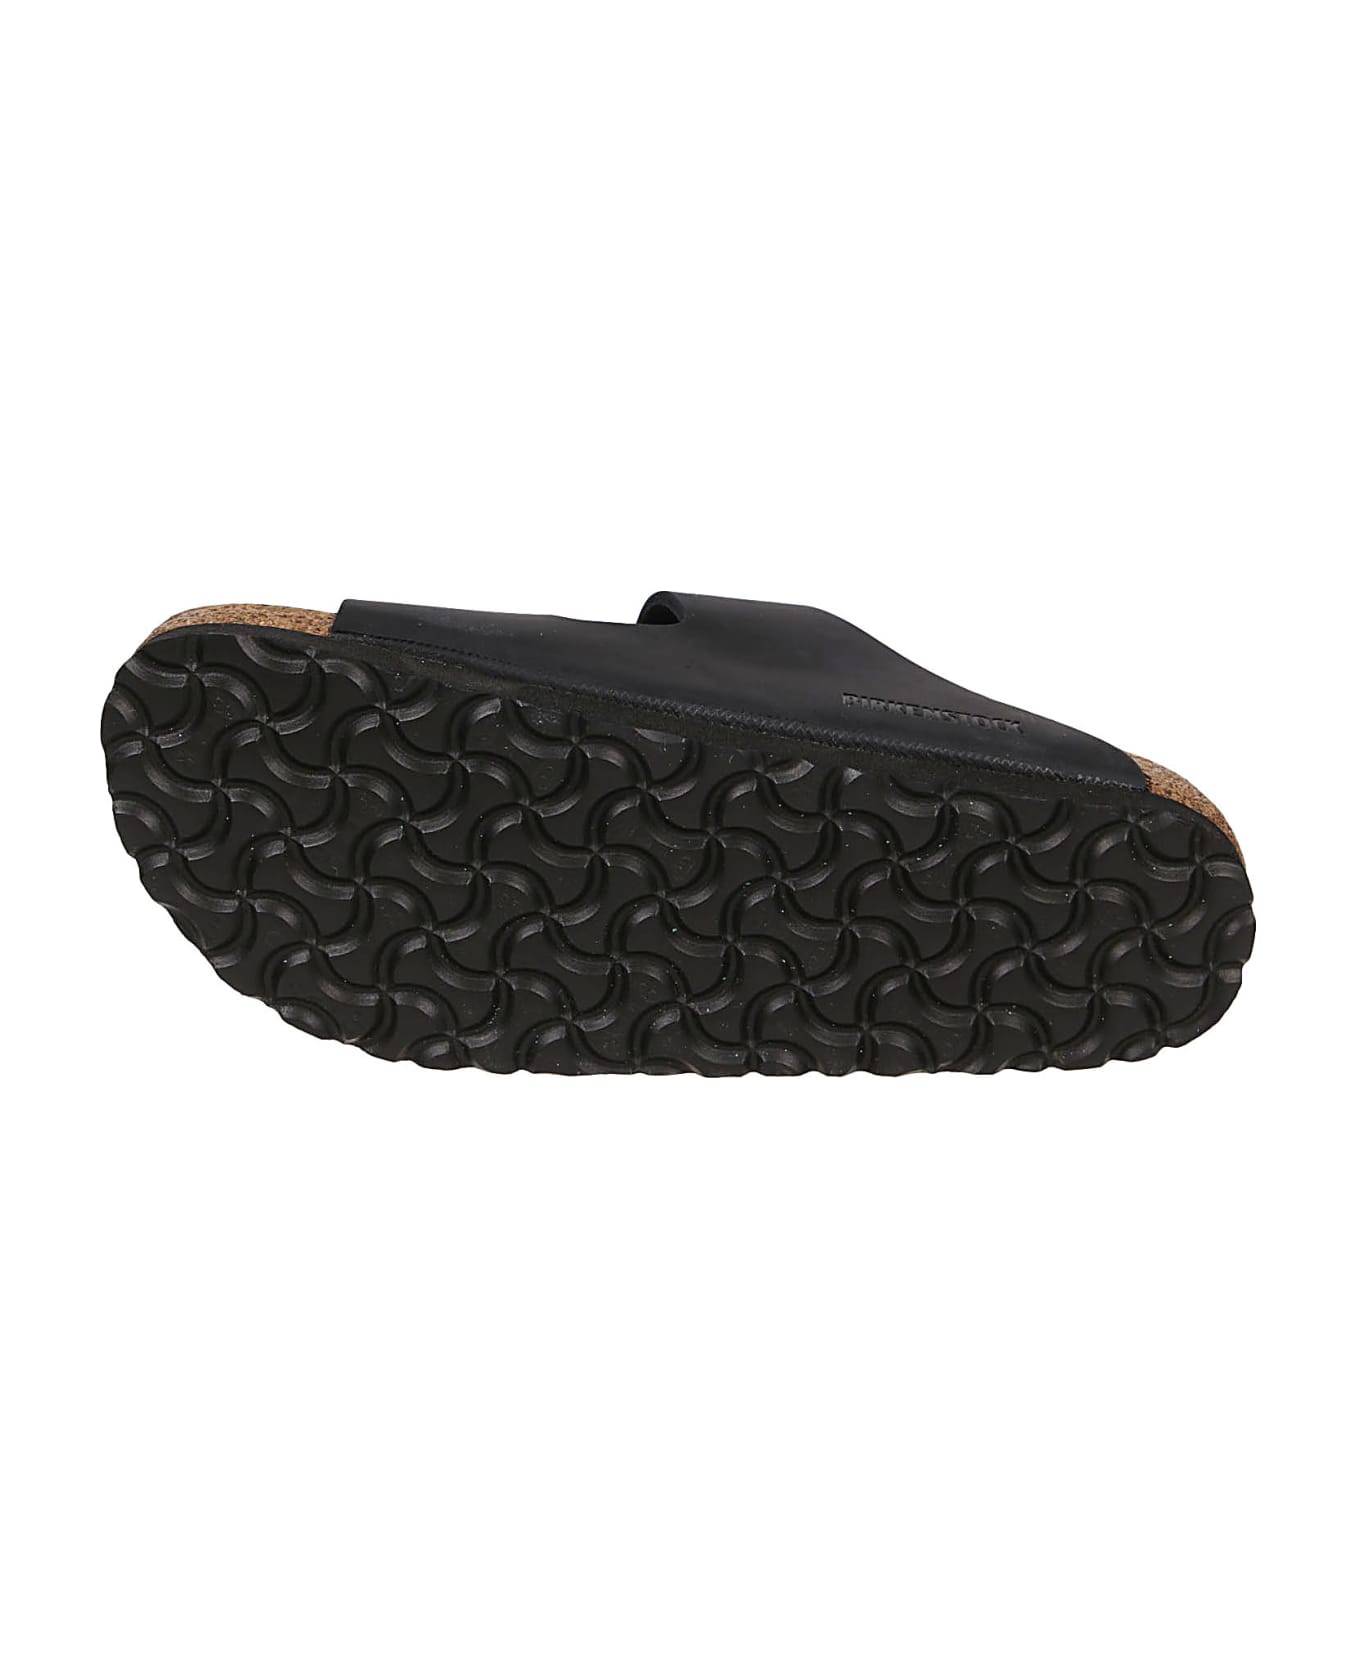 Birkenstock Arizona Big Buckle Sandals - Black